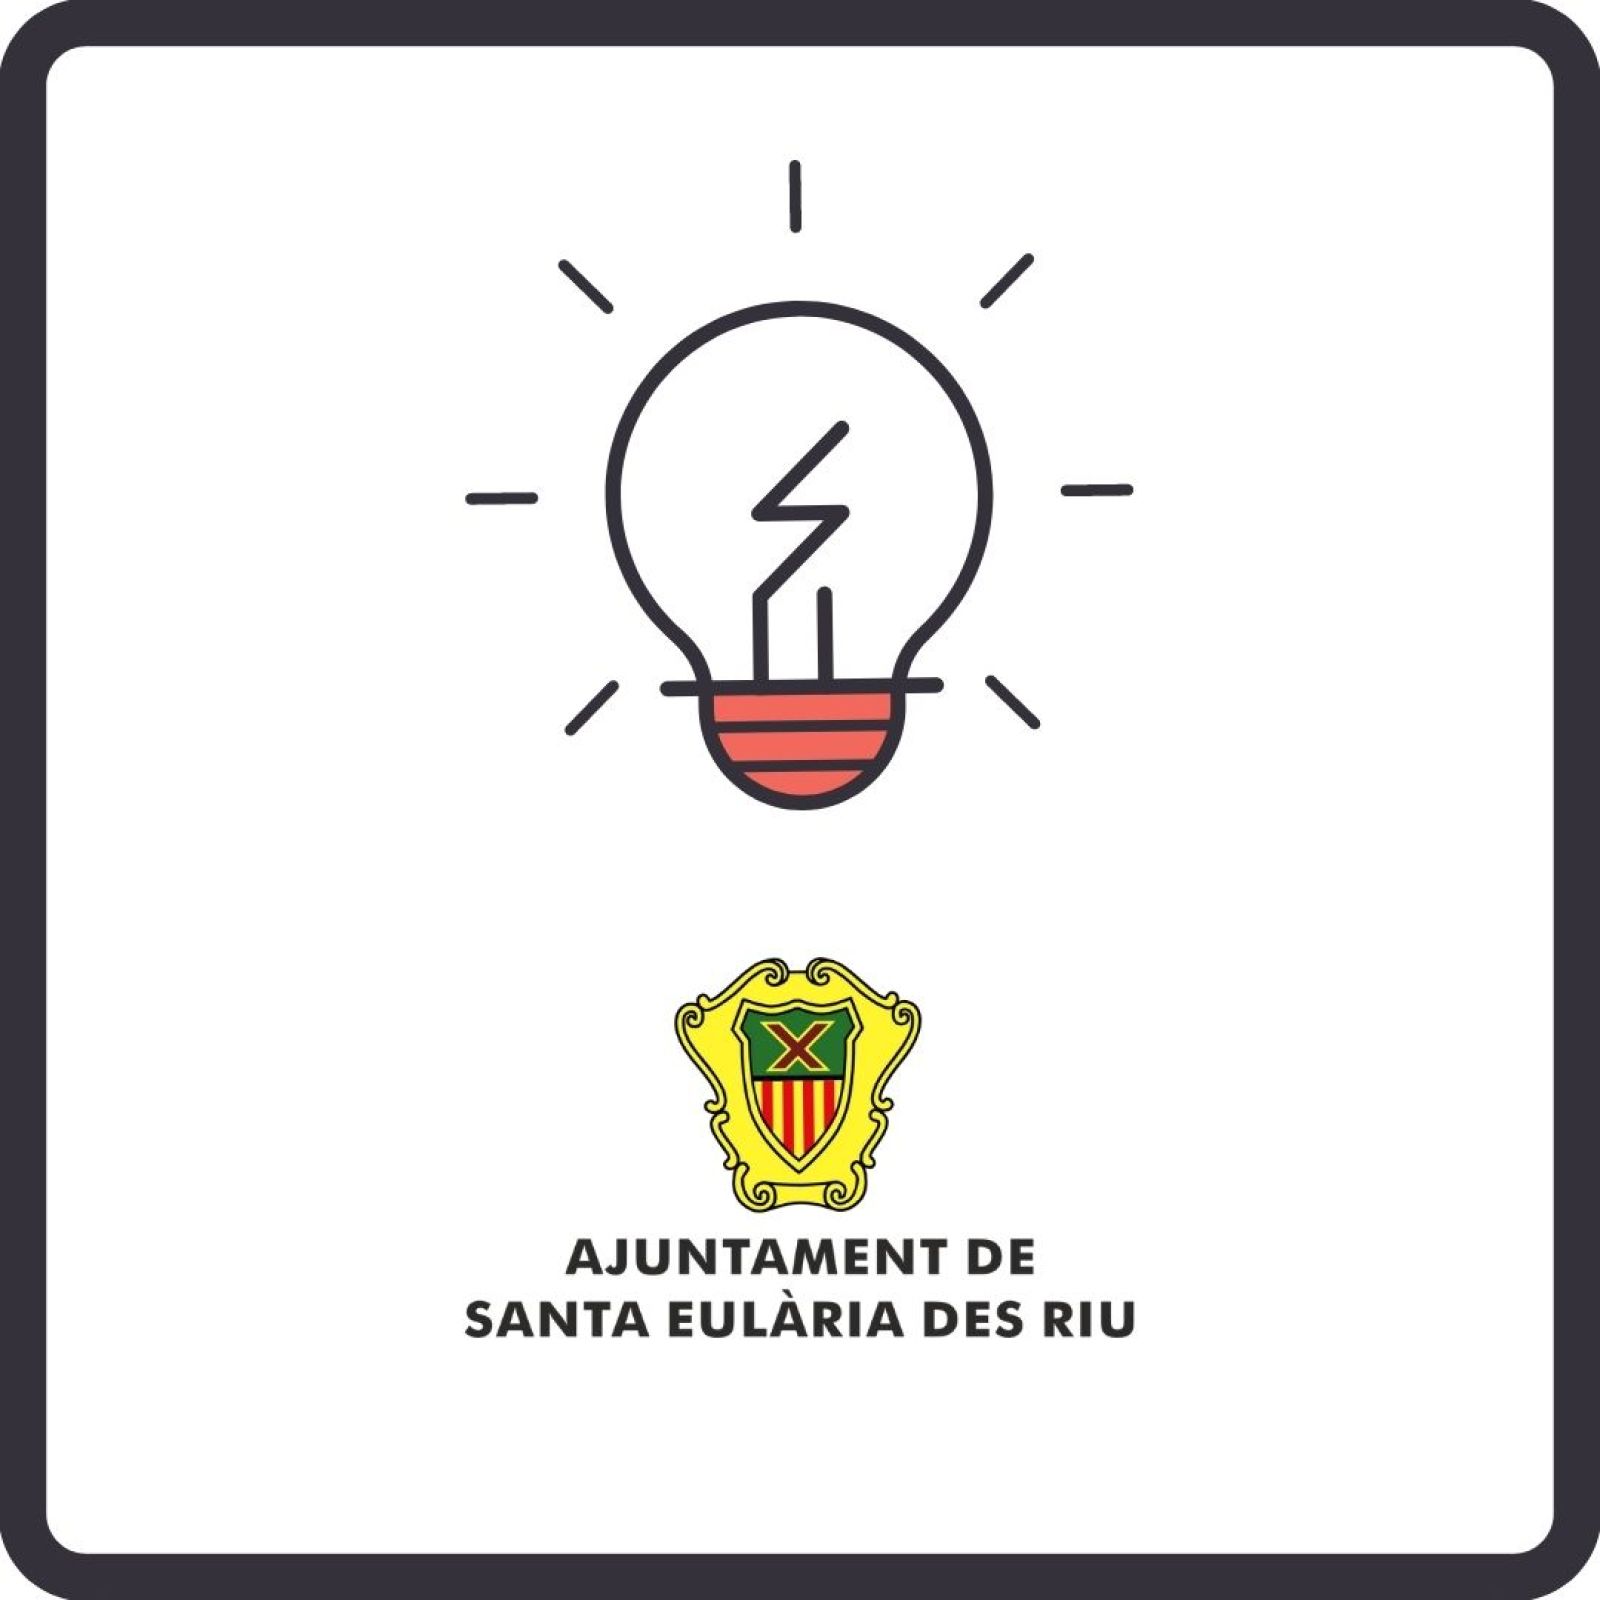 Corte temporal del suministro de energía eléctrica en diferentes zonas de Santa Eulària des Riu los días 22 y 23 de septiembre